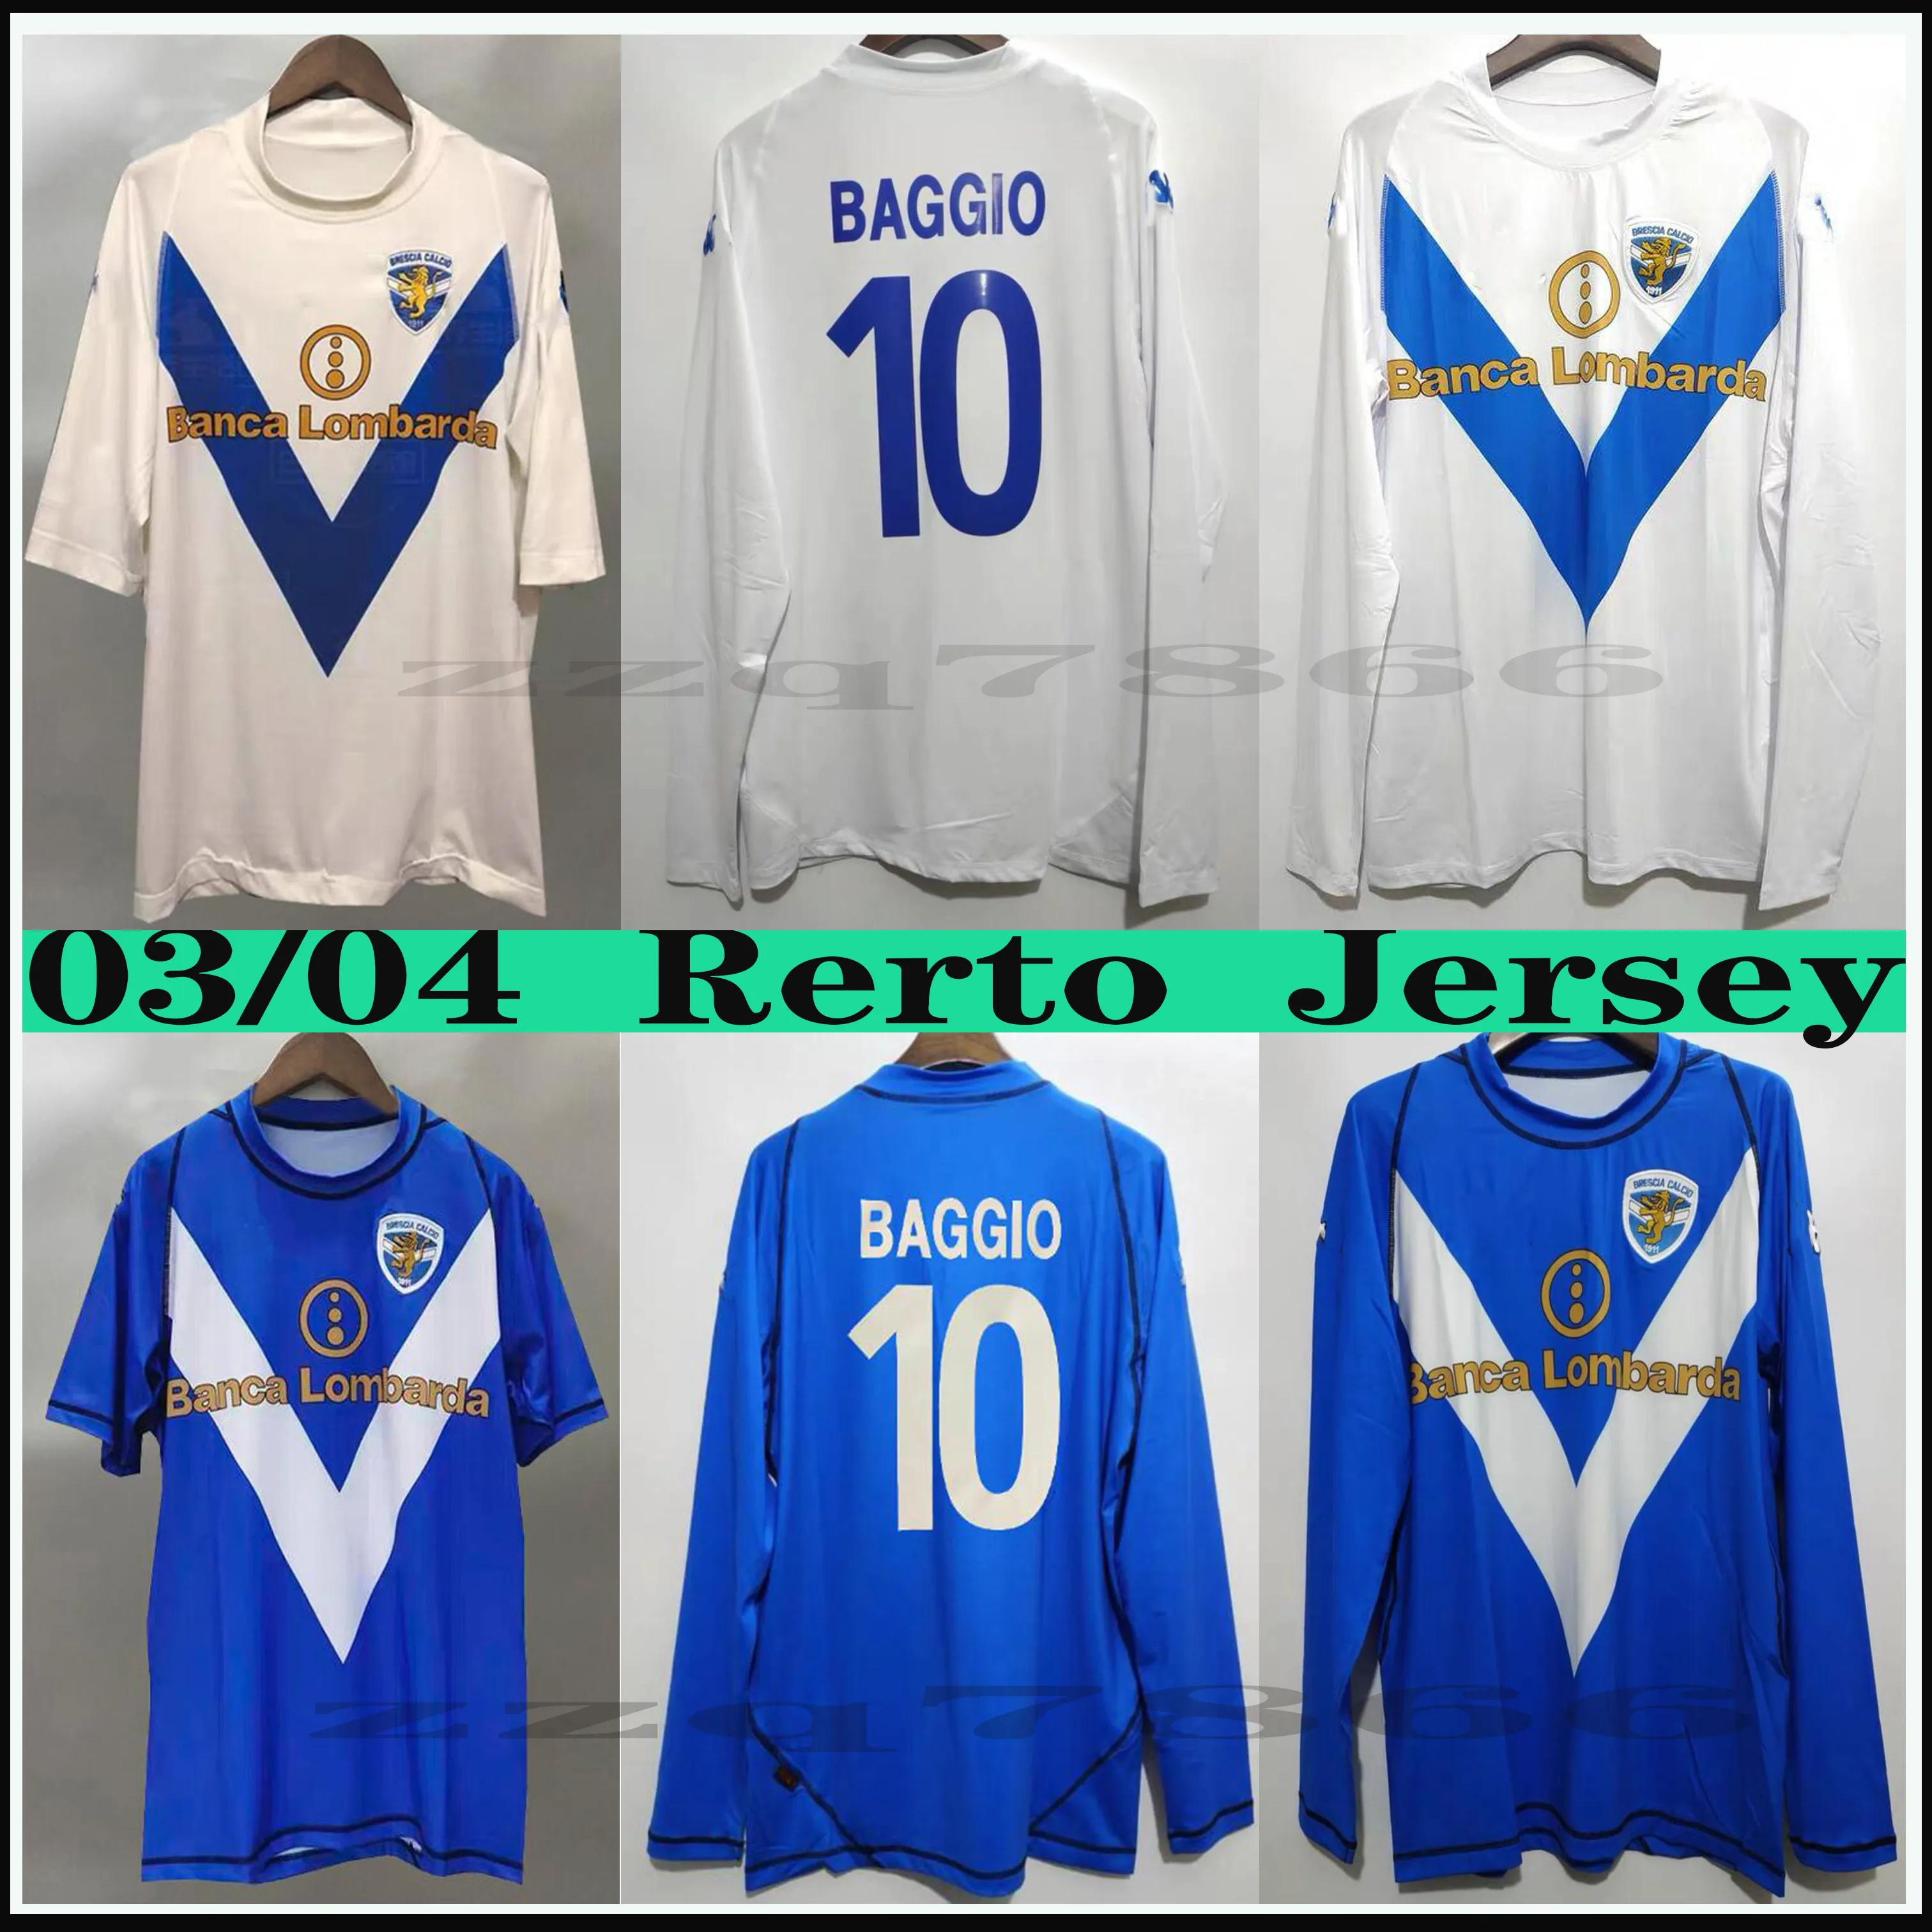 2003 2004 Brescia Baggio Pirlo Retro Futbol forması Klasik Vintage Calcio F.Aye Donnarumma Spalek Uzun kollu Kısa forma